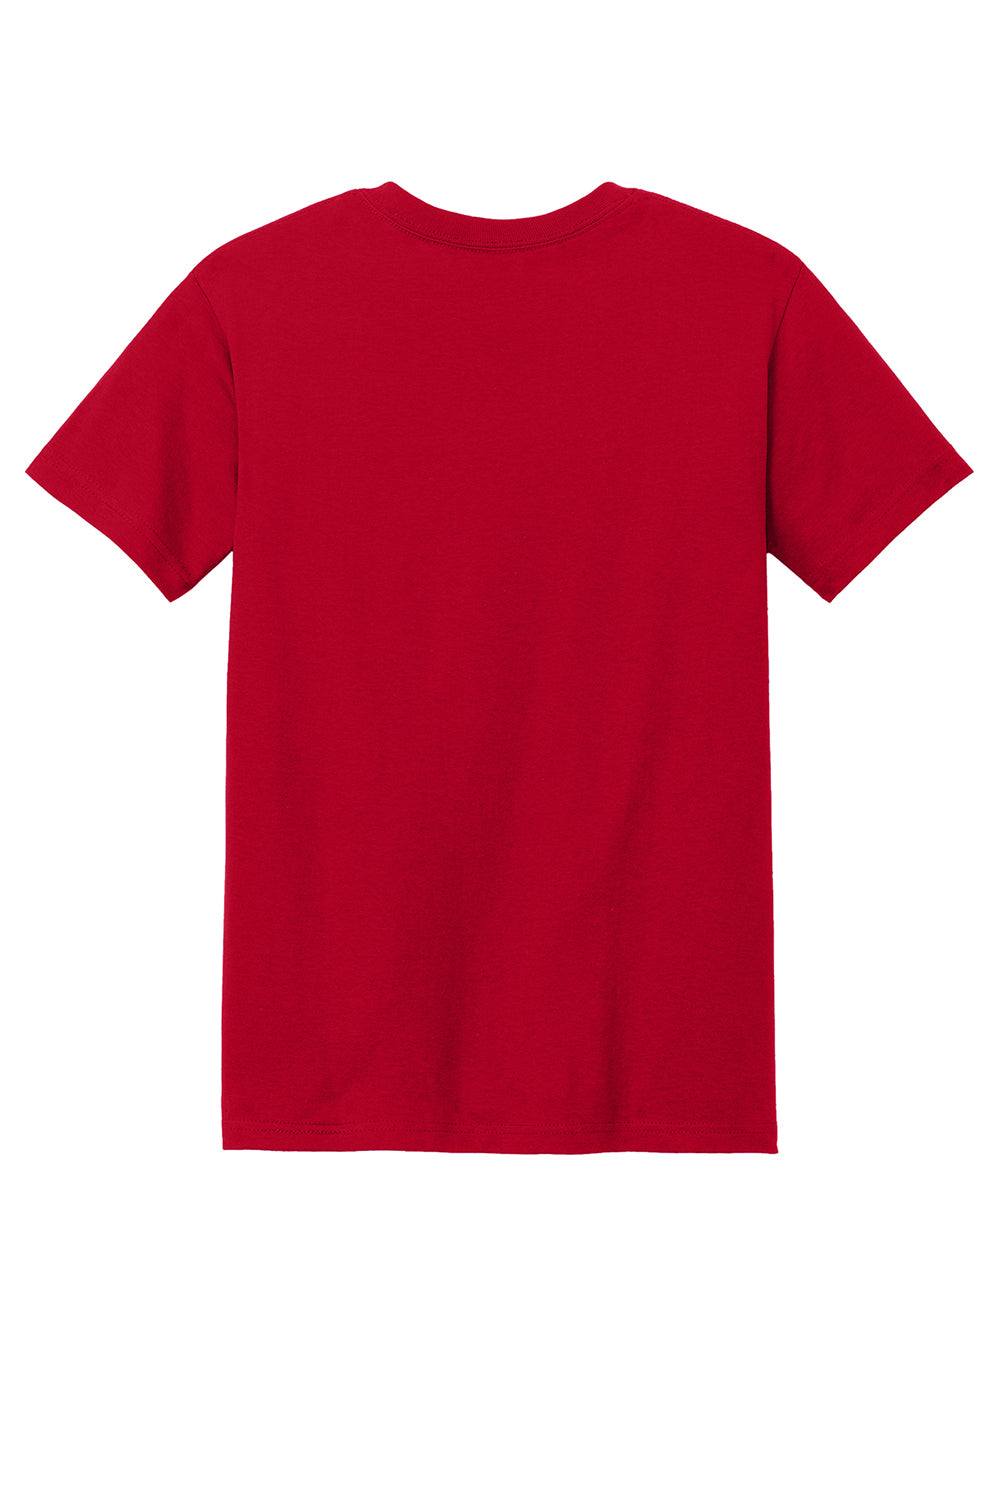 American Apparel 1301/AL1301 Mens Short Sleeve Crewneck T-Shirt Red Flat Back